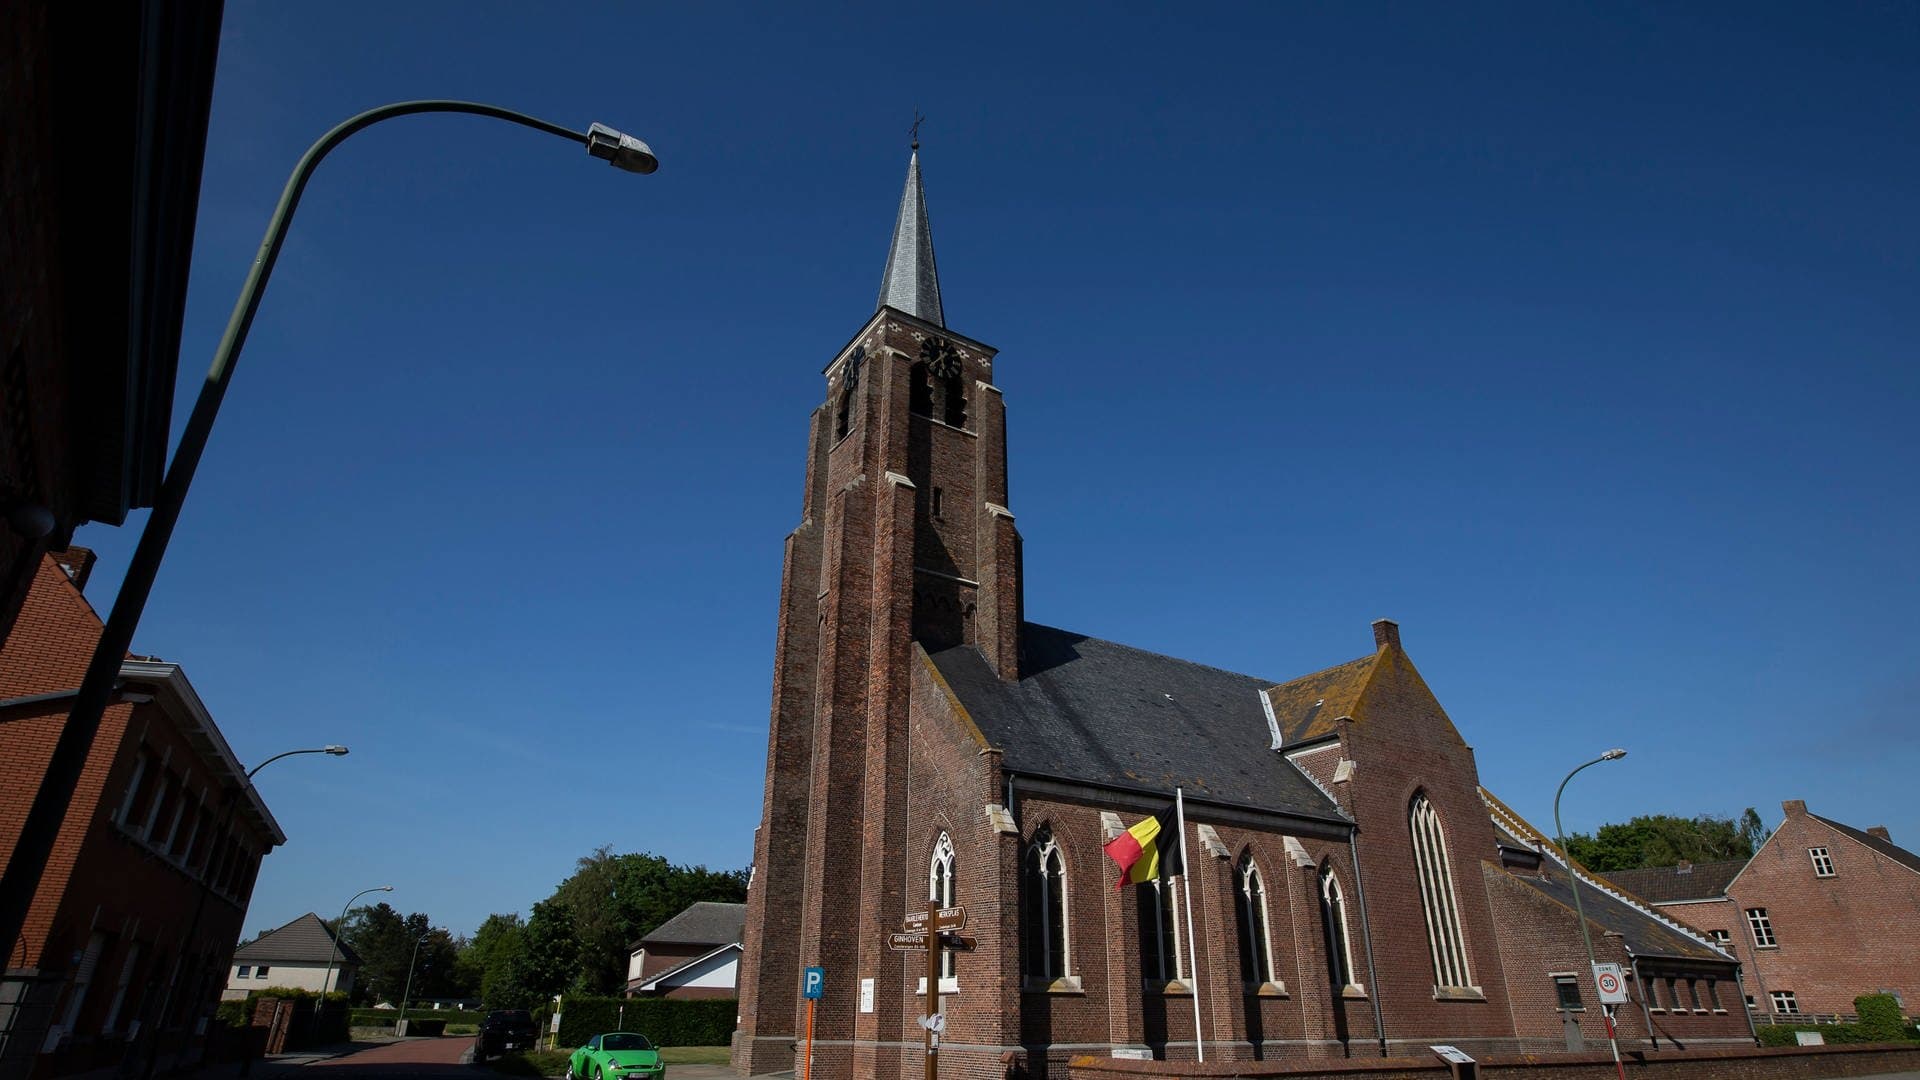 In Baarle-Hertog kann man Städtetrip in zwei Ländern in nur einer Stadt machen. Die Grenze der zweier Länder verläuft genau durch die Gehimtipp Stadt, die darüber hinaus noch schöne Bauten, wie Kirchen bietet. Eine Städtereise mit Grenzerfahrung!